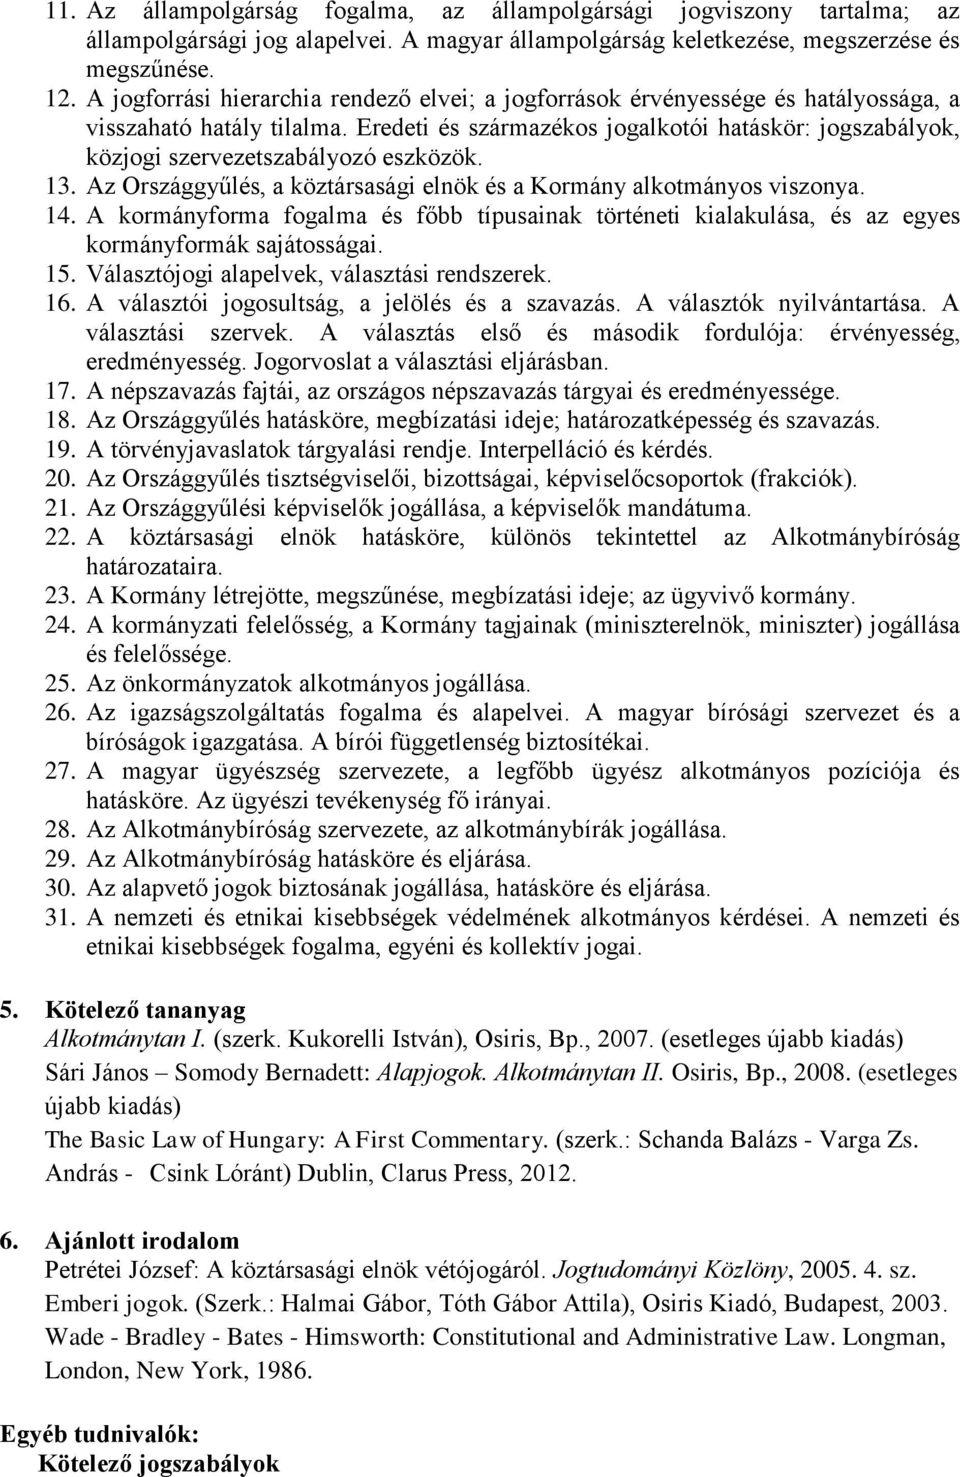 Eredeti és származékos jogalkotói hatáskör: jogszabályok, közjogi szervezetszabályozó eszközök. 13. Az Országgyűlés, a köztársasági elnök és a Kormány alkotmányos viszonya. 14.